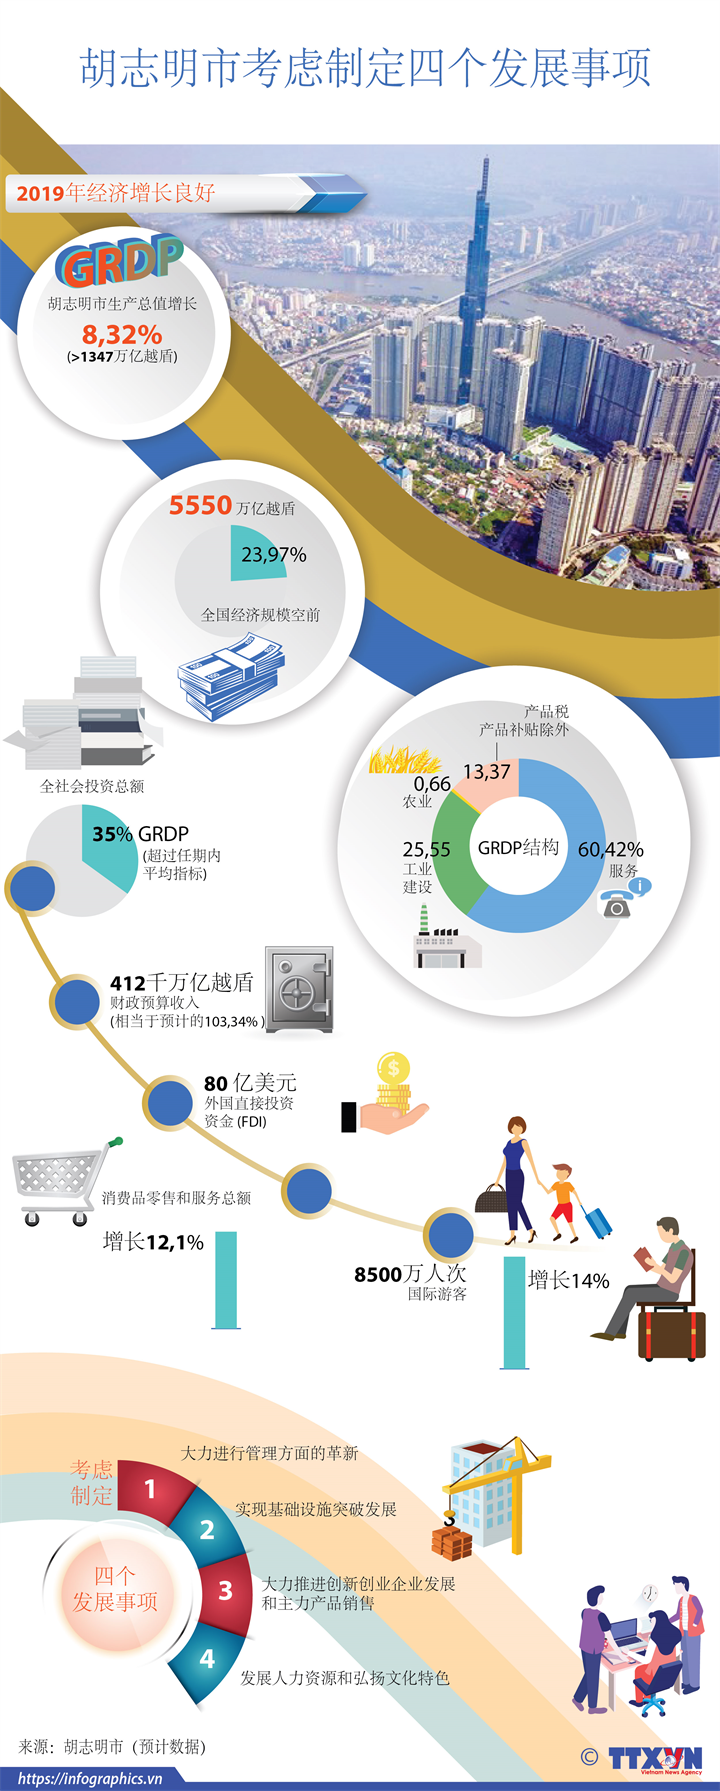 2020年胡志明市考虑制定四个发展事项